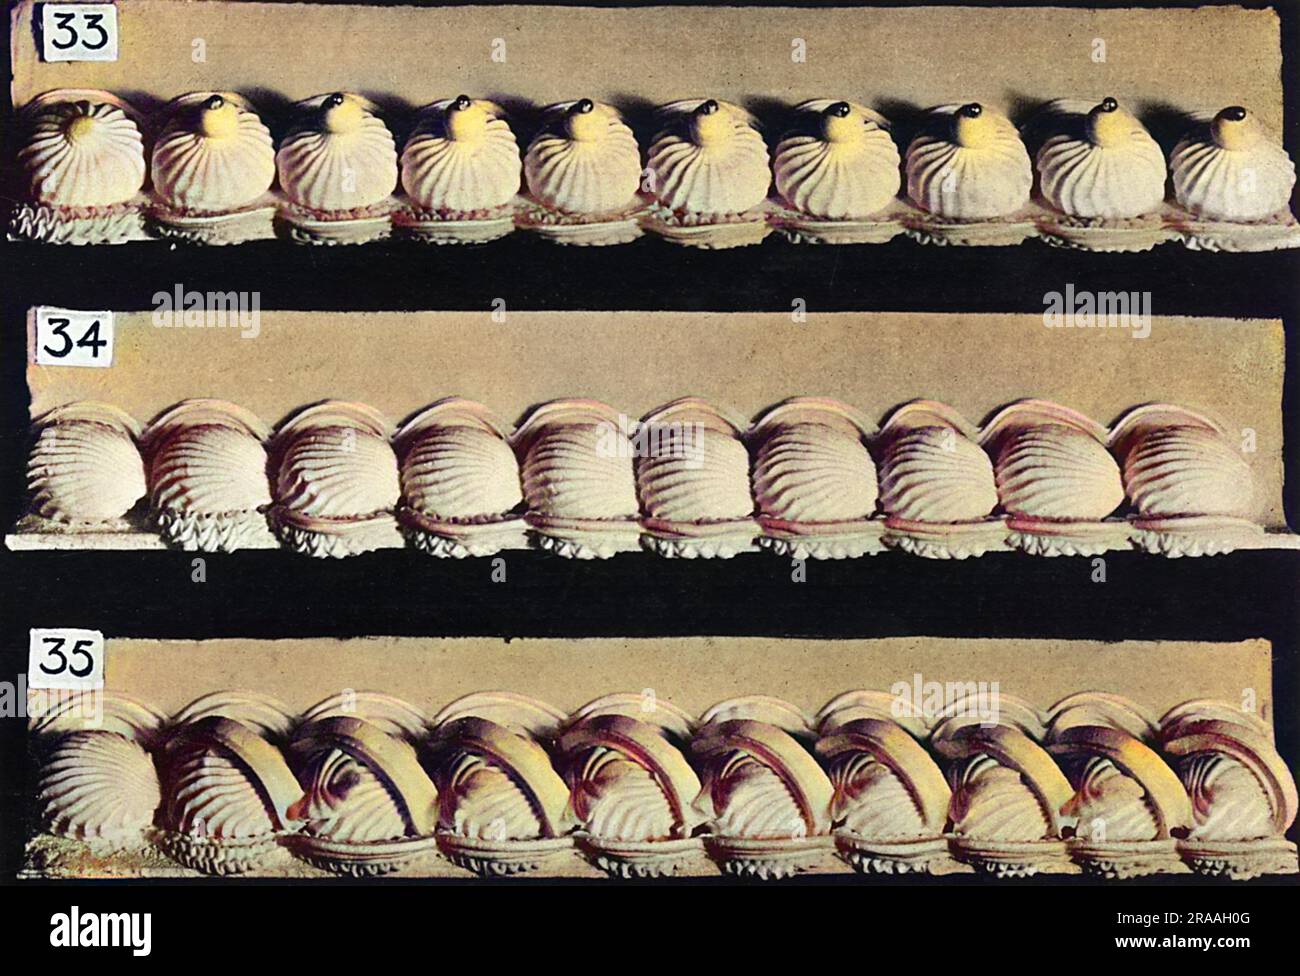 Bordures à gâteau et à défilement latéral, bordures simples Date: 1936 Banque D'Images